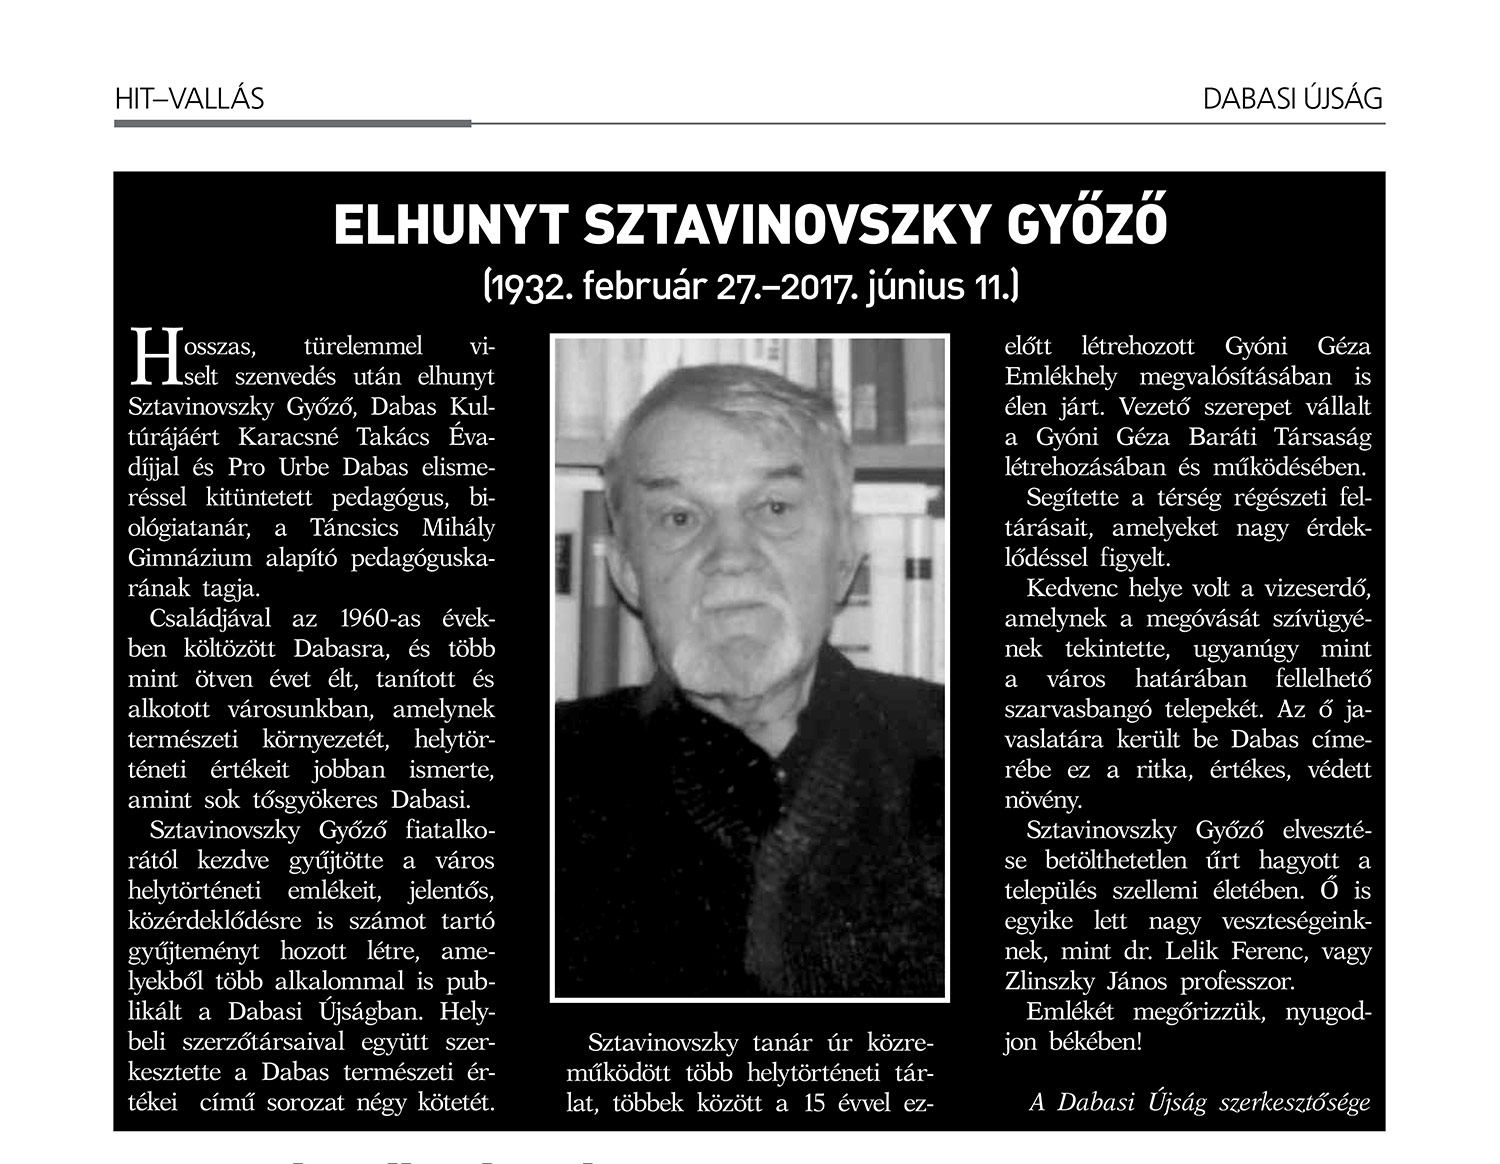 Sztavinovszky Győző (1932. február 27. – 2017. június 11.)